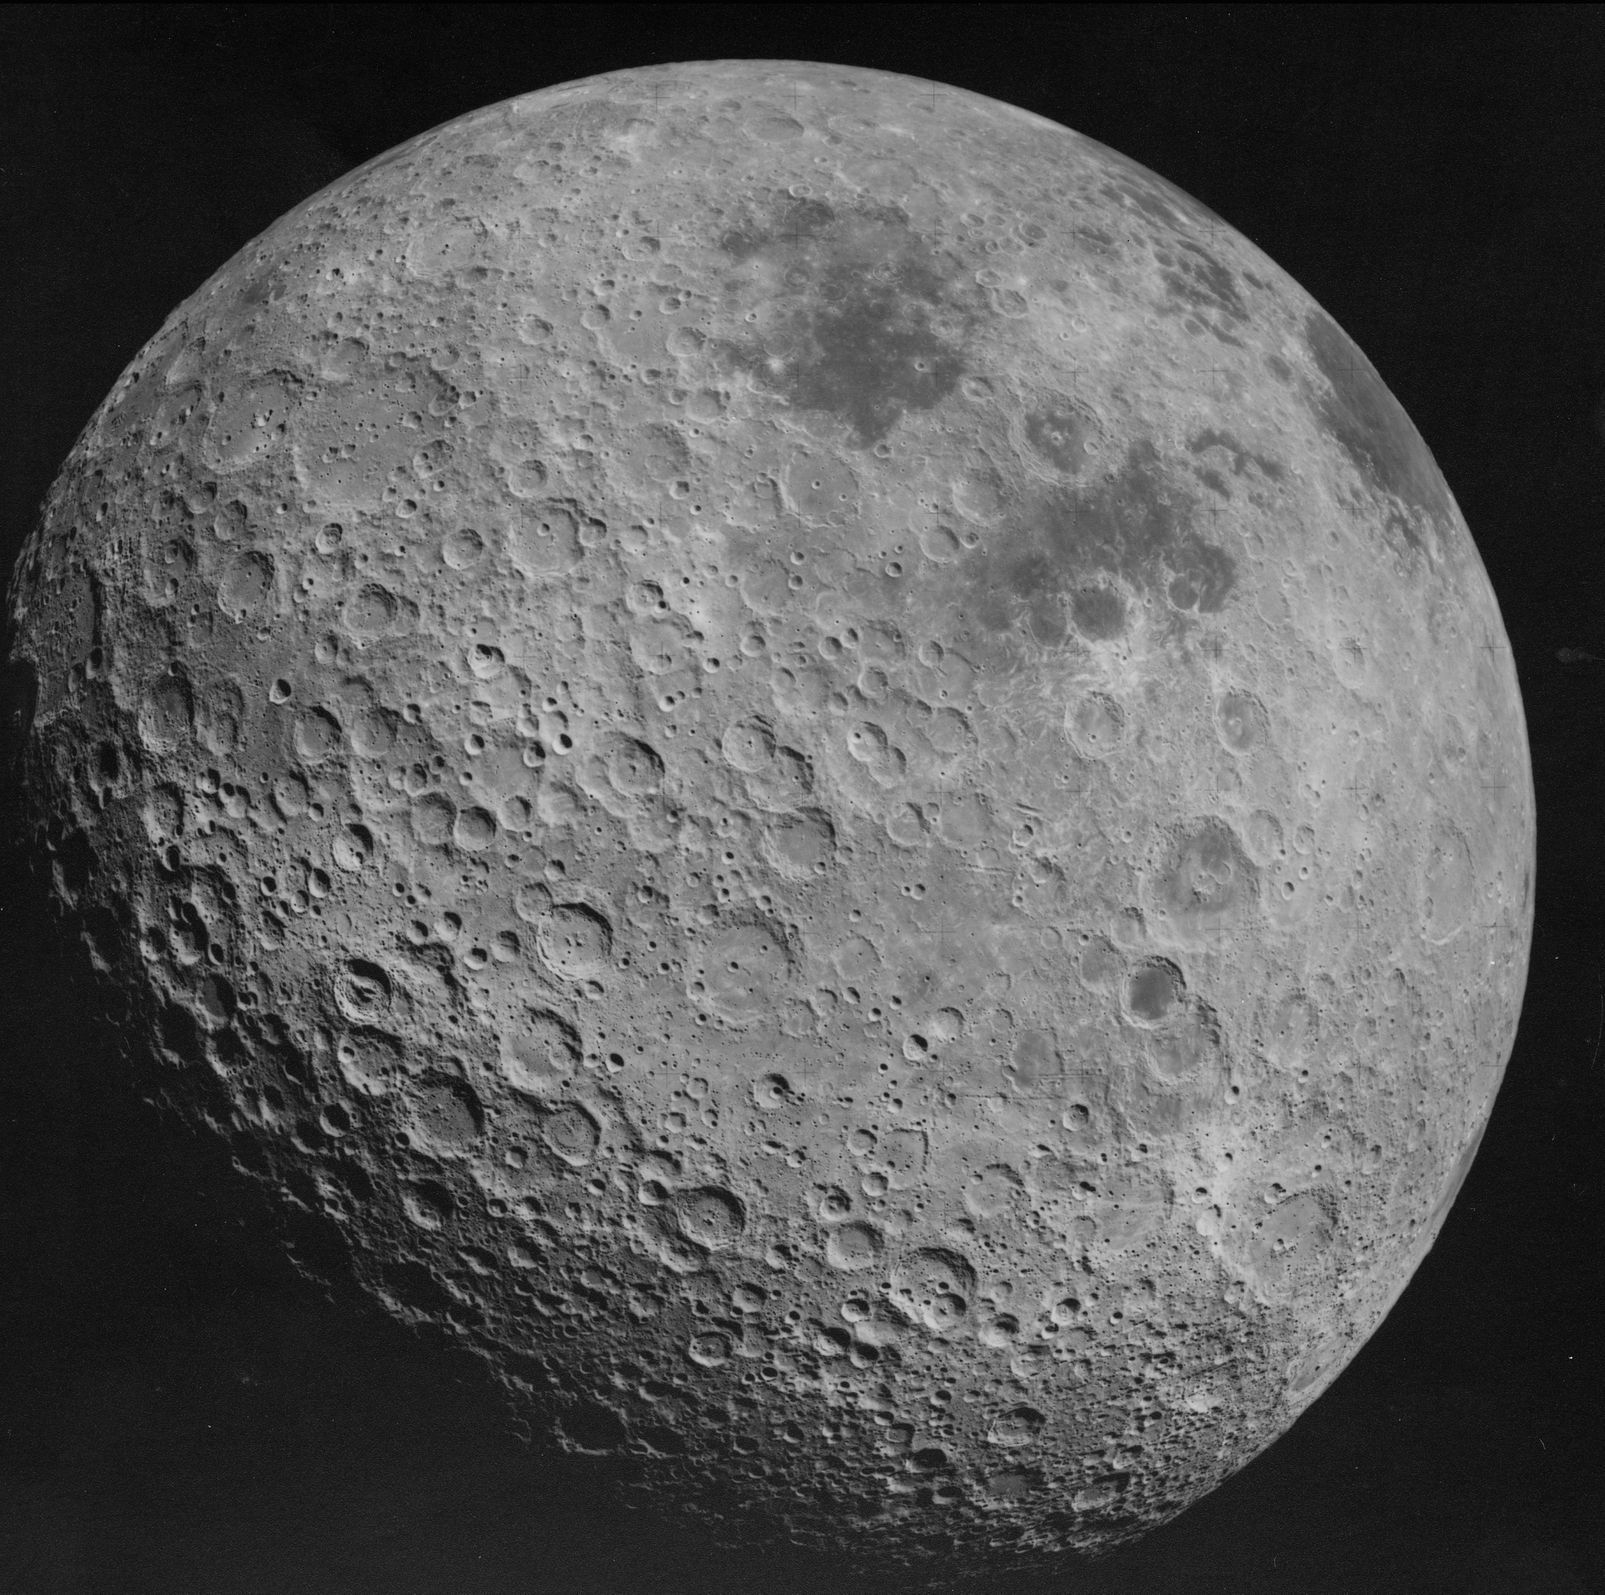 Odvrácená strana Měsíce pořízená astronauty mise Apollo 16